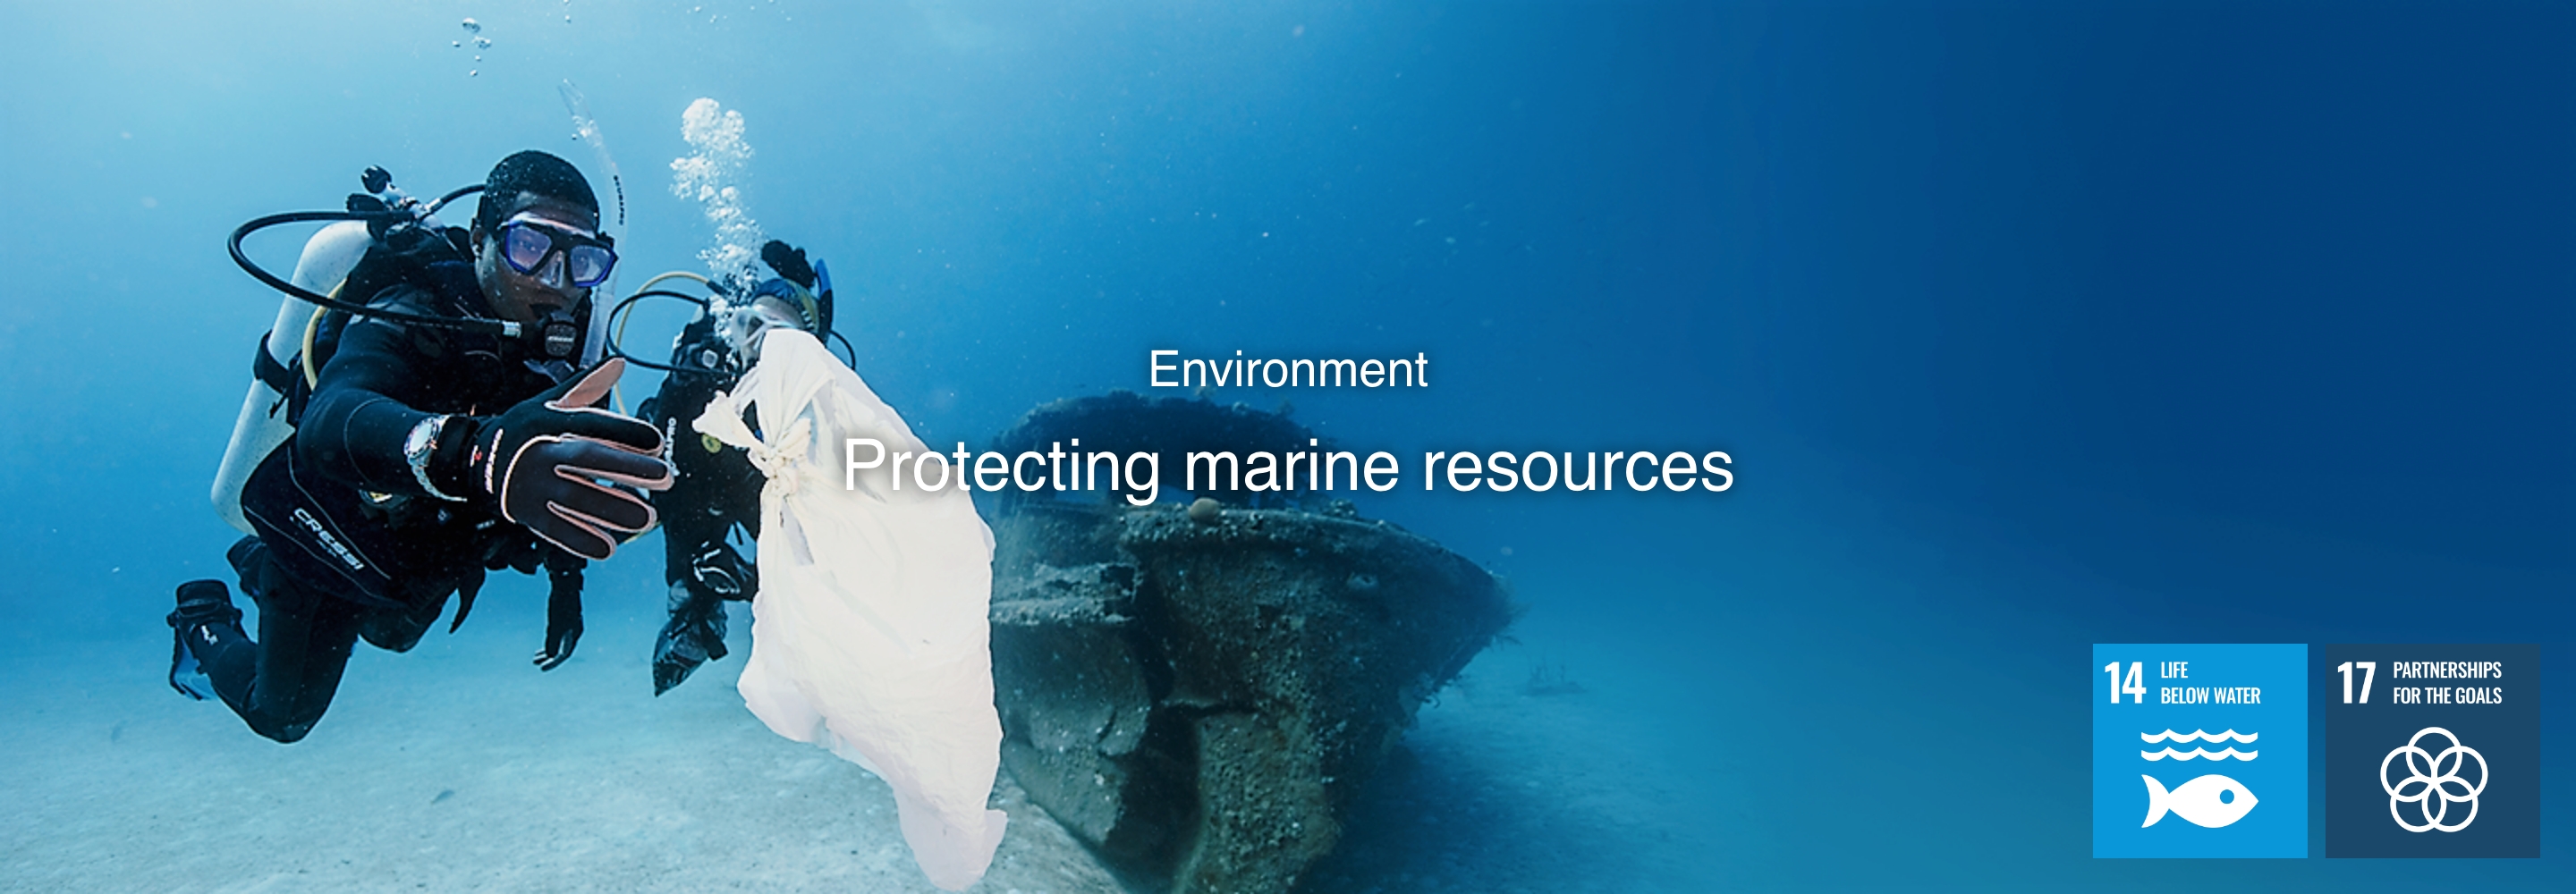 Milieu Bescherming van mariene hulpbronnen